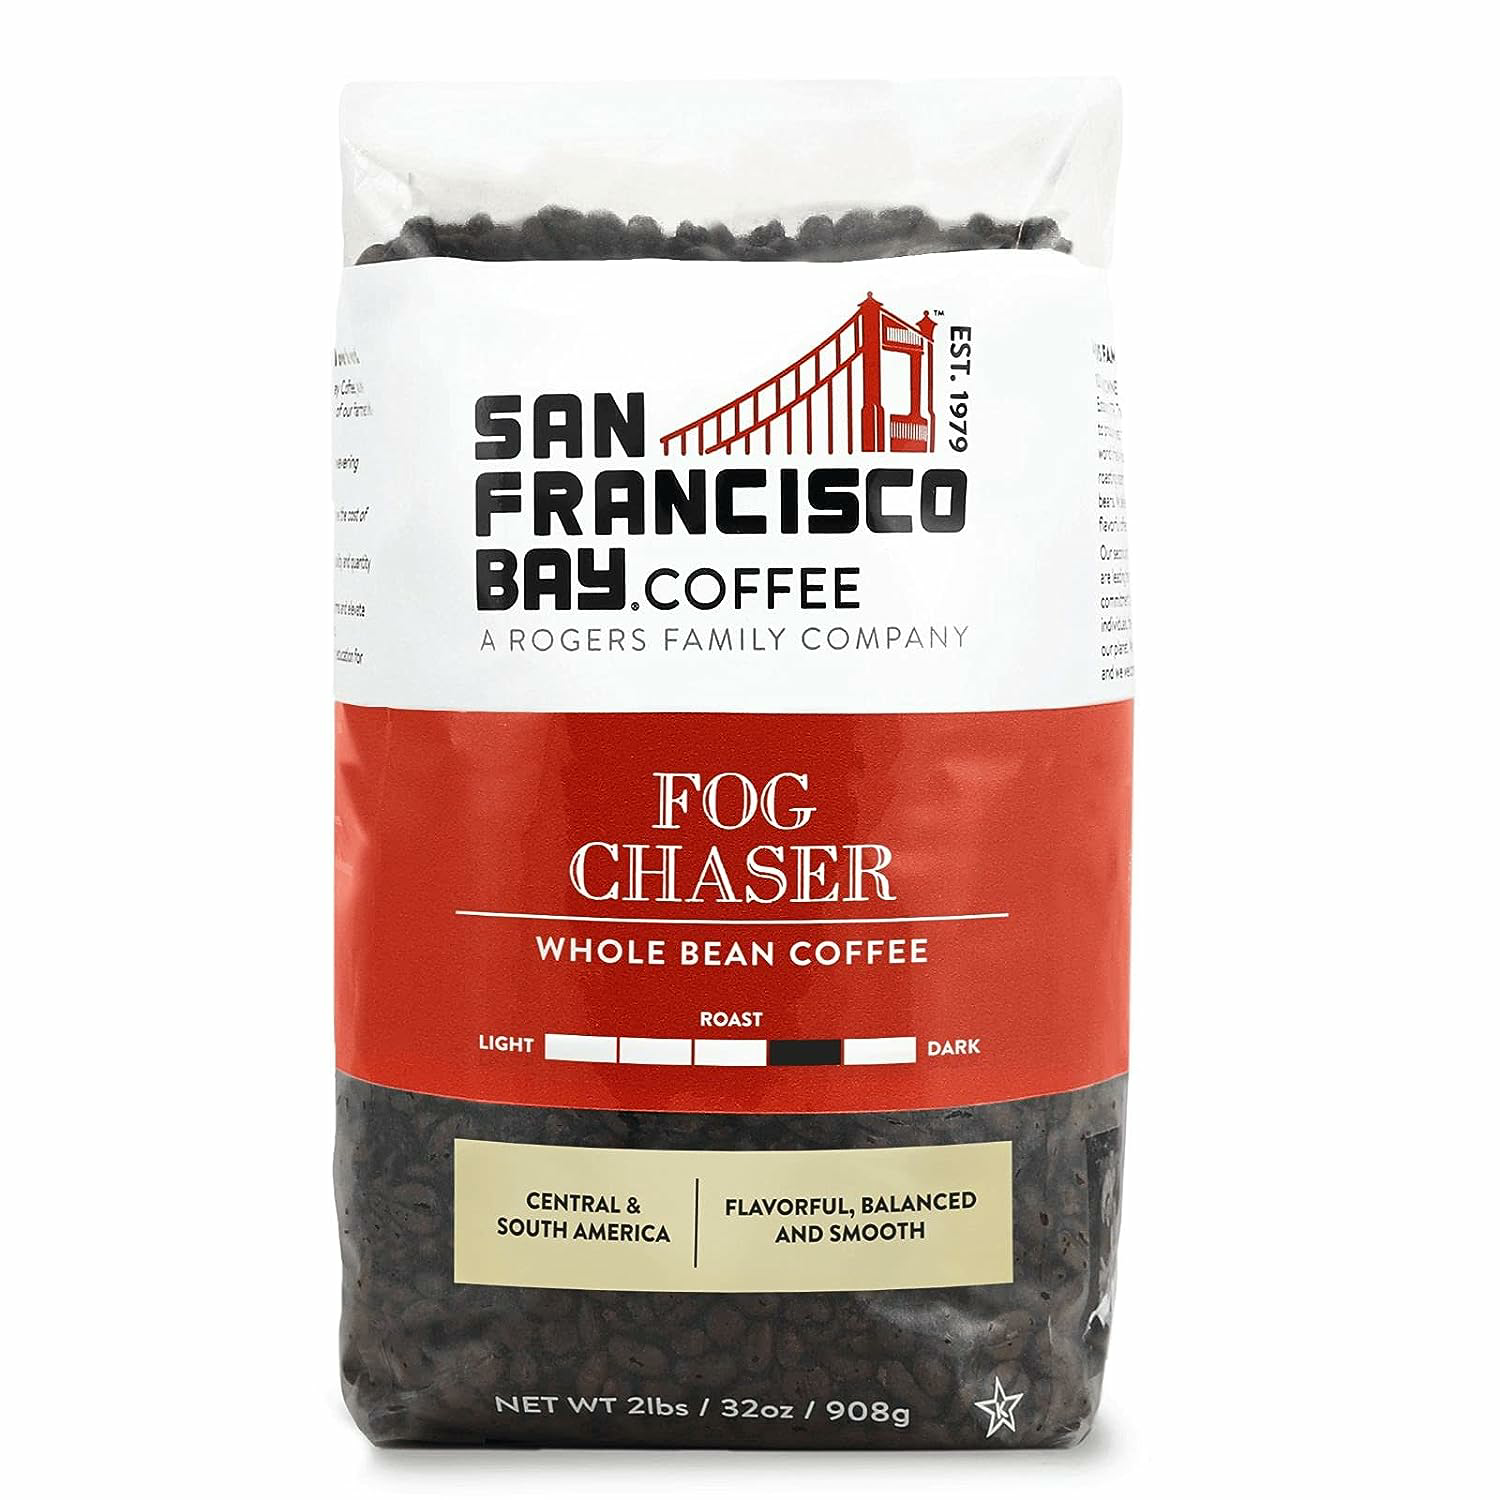 San Francisco Bay Whole Bean Coffee - Fog Chaser (2lb Bag), Medium Dark Roast $16.49